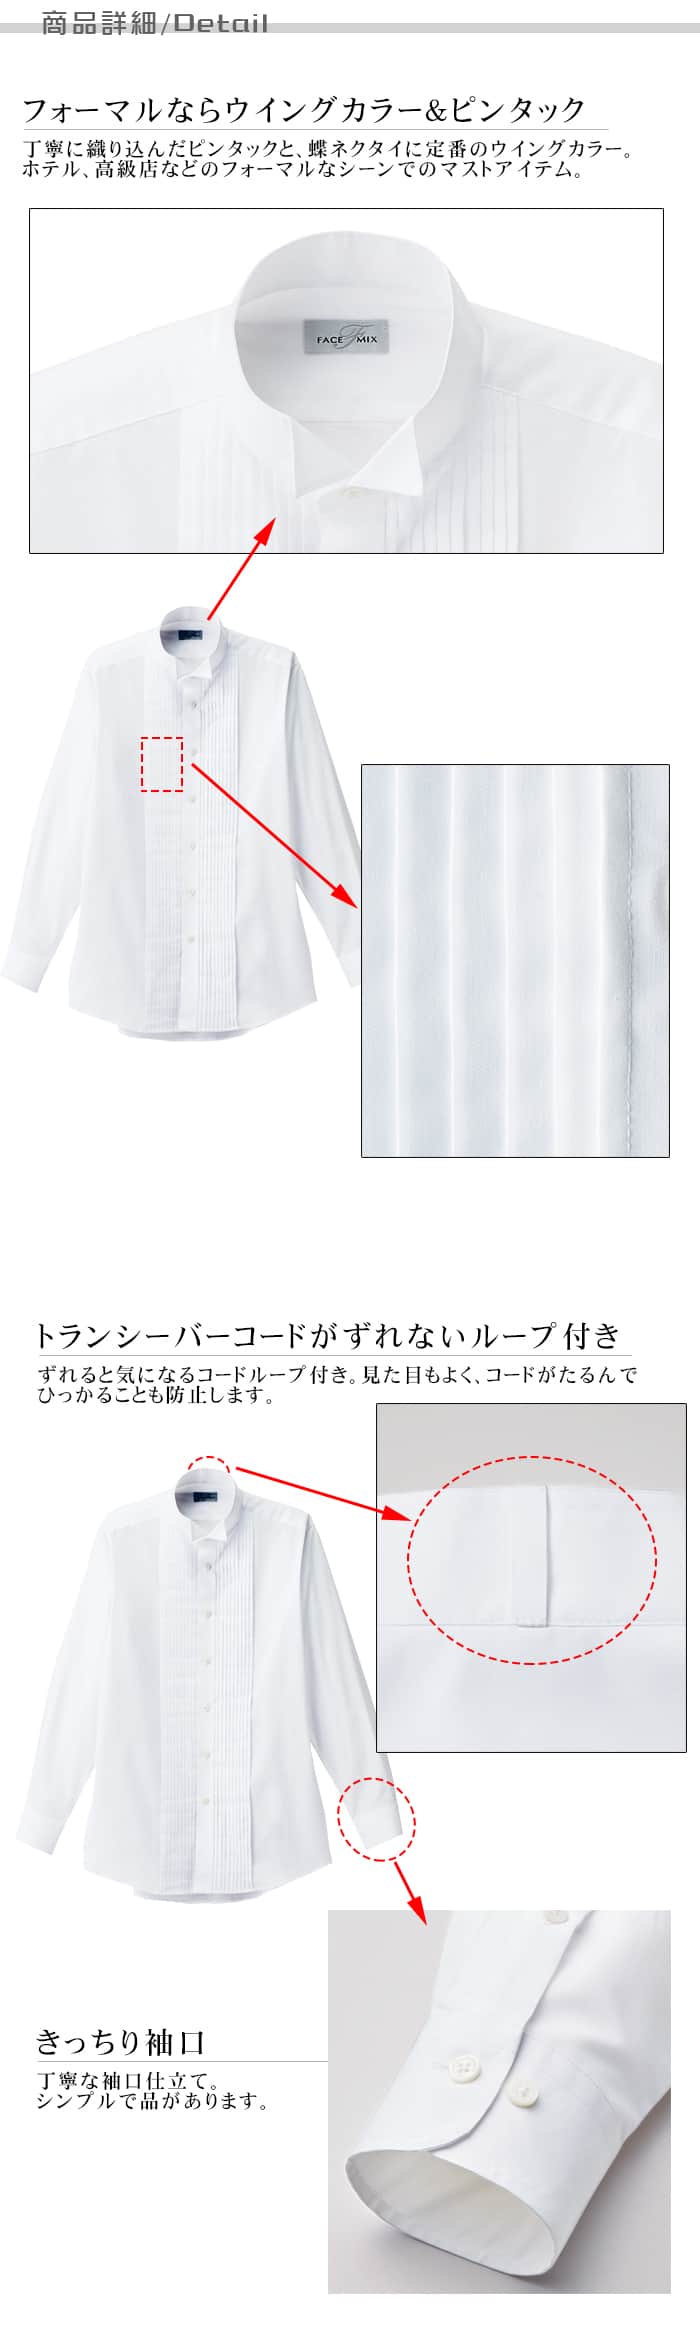 業務用制服フォーマルピンタック・ウイングカラーシャツ(長袖)メンズ(男)2色  商品詳細説明